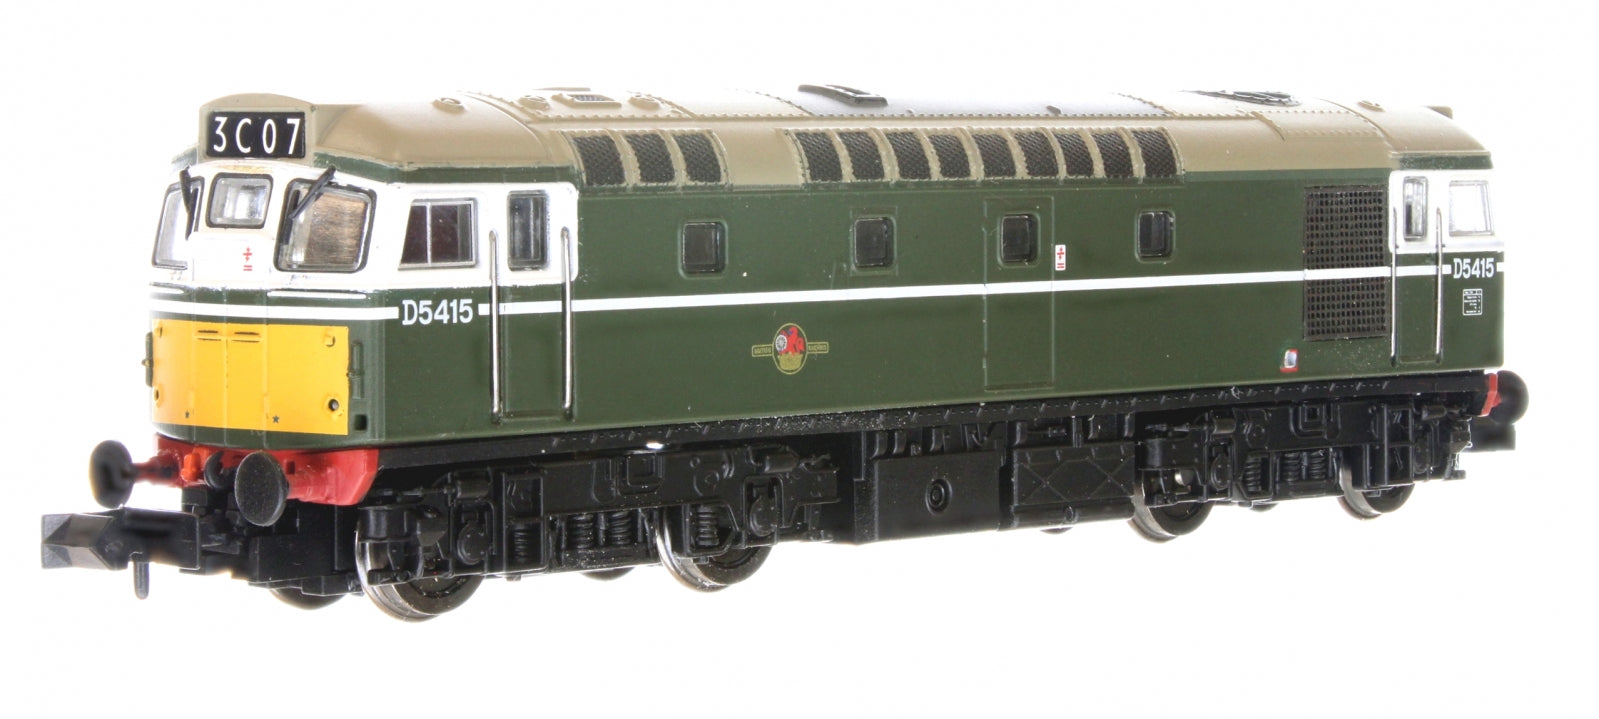 2D-013-003 N Gauge Class 27 D5415 BR Green SYP